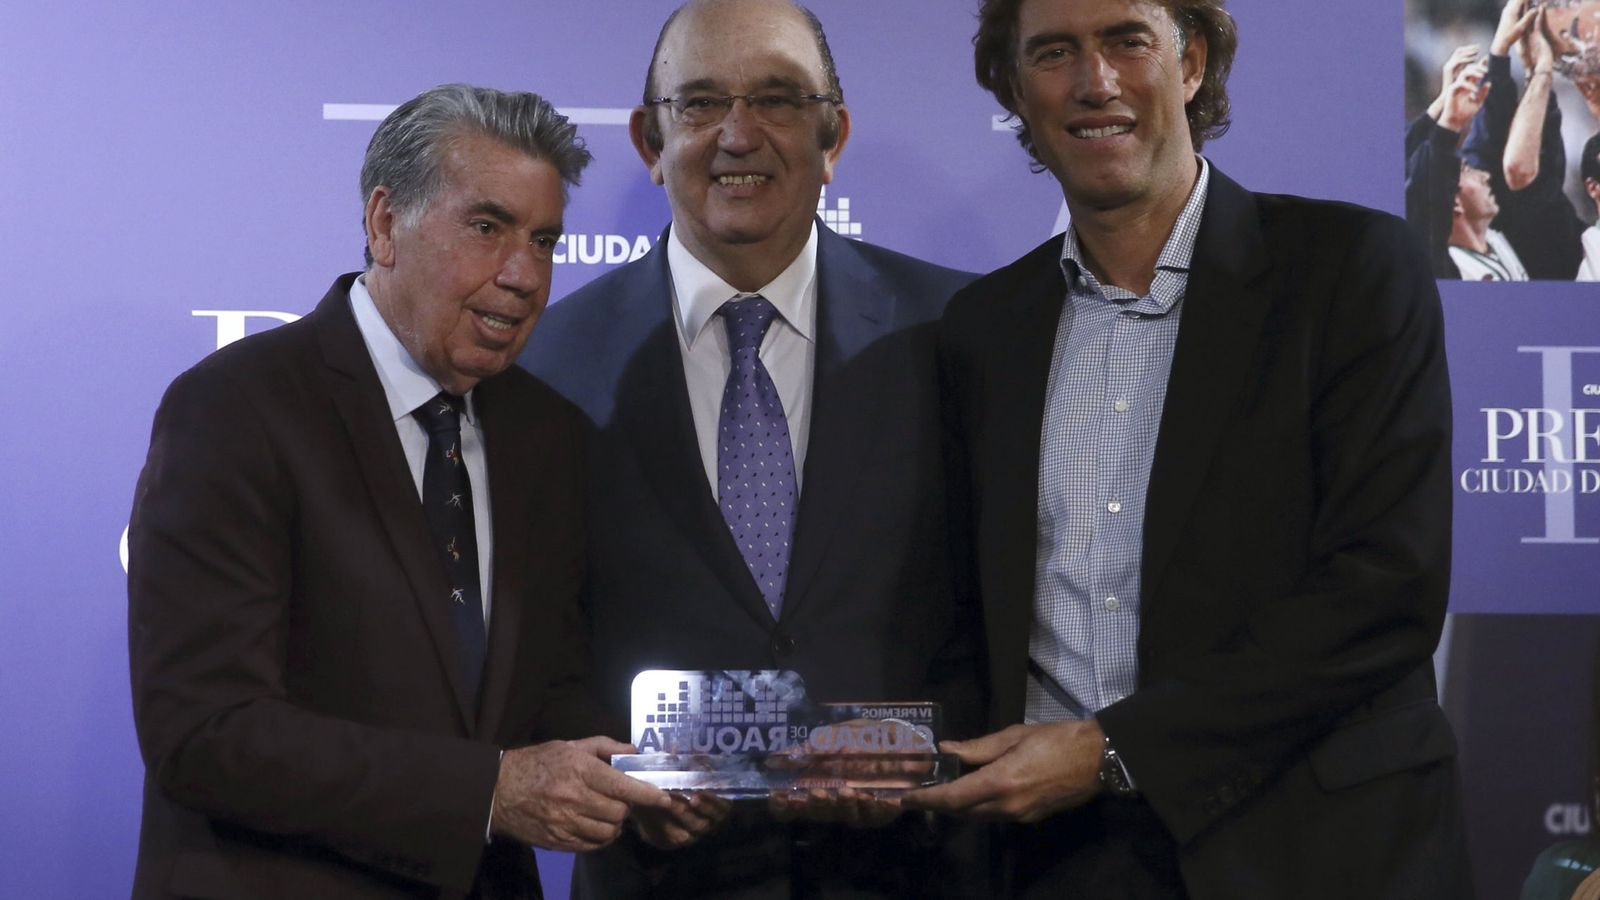 Foto: Miguel Díaz (centro) entregando el premio Ciudad de la Raqueta a Manolo Santana (derecha) y Gerard Tsobanian (izquierda). Foto: Juanjo Martín (EFE)